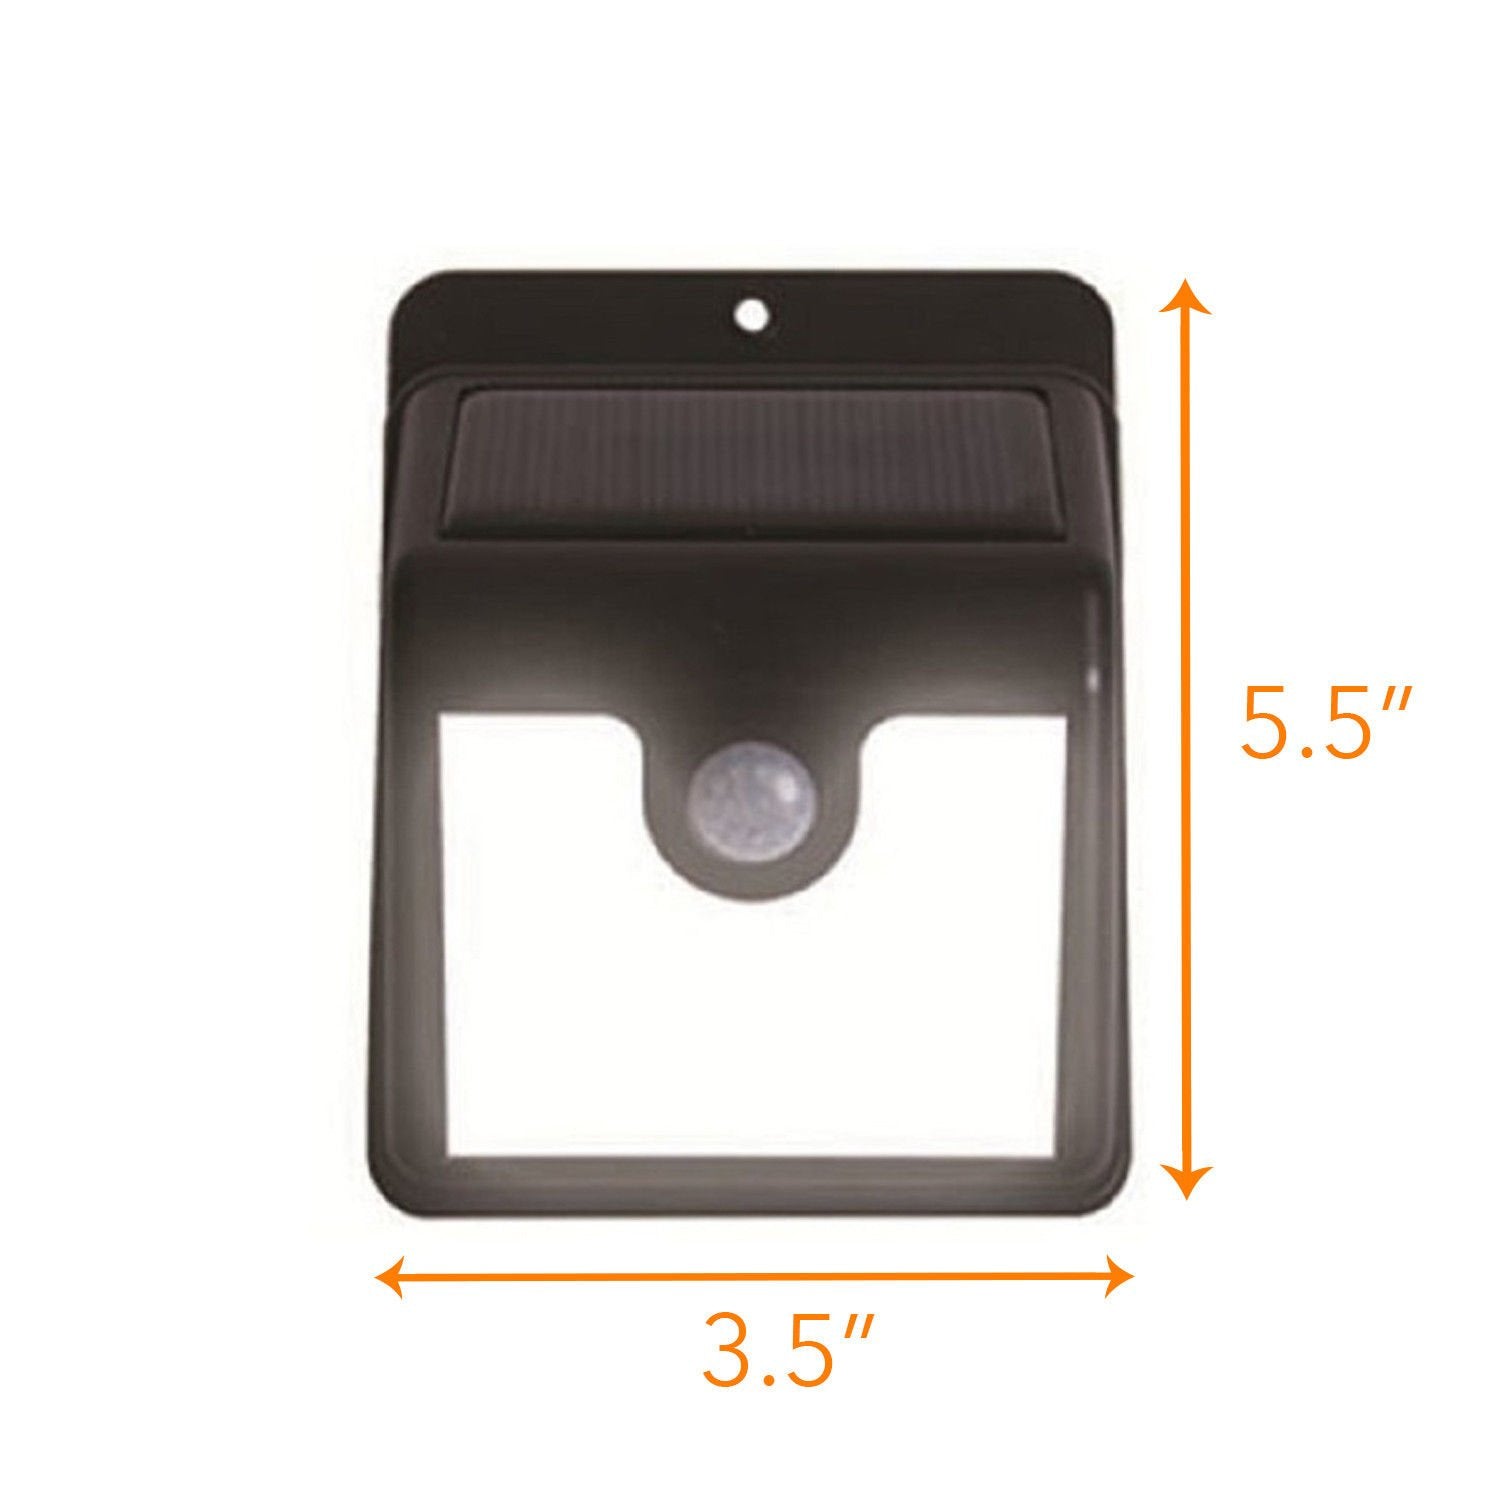 New Motion Sensor Light Pack – LED Solar Lights – Solar LED Lights – LED Outdoor Lights for Patio, Walkway, Front Door & More - Solar LED Lights Outdoor/Indoor (2 Pack)